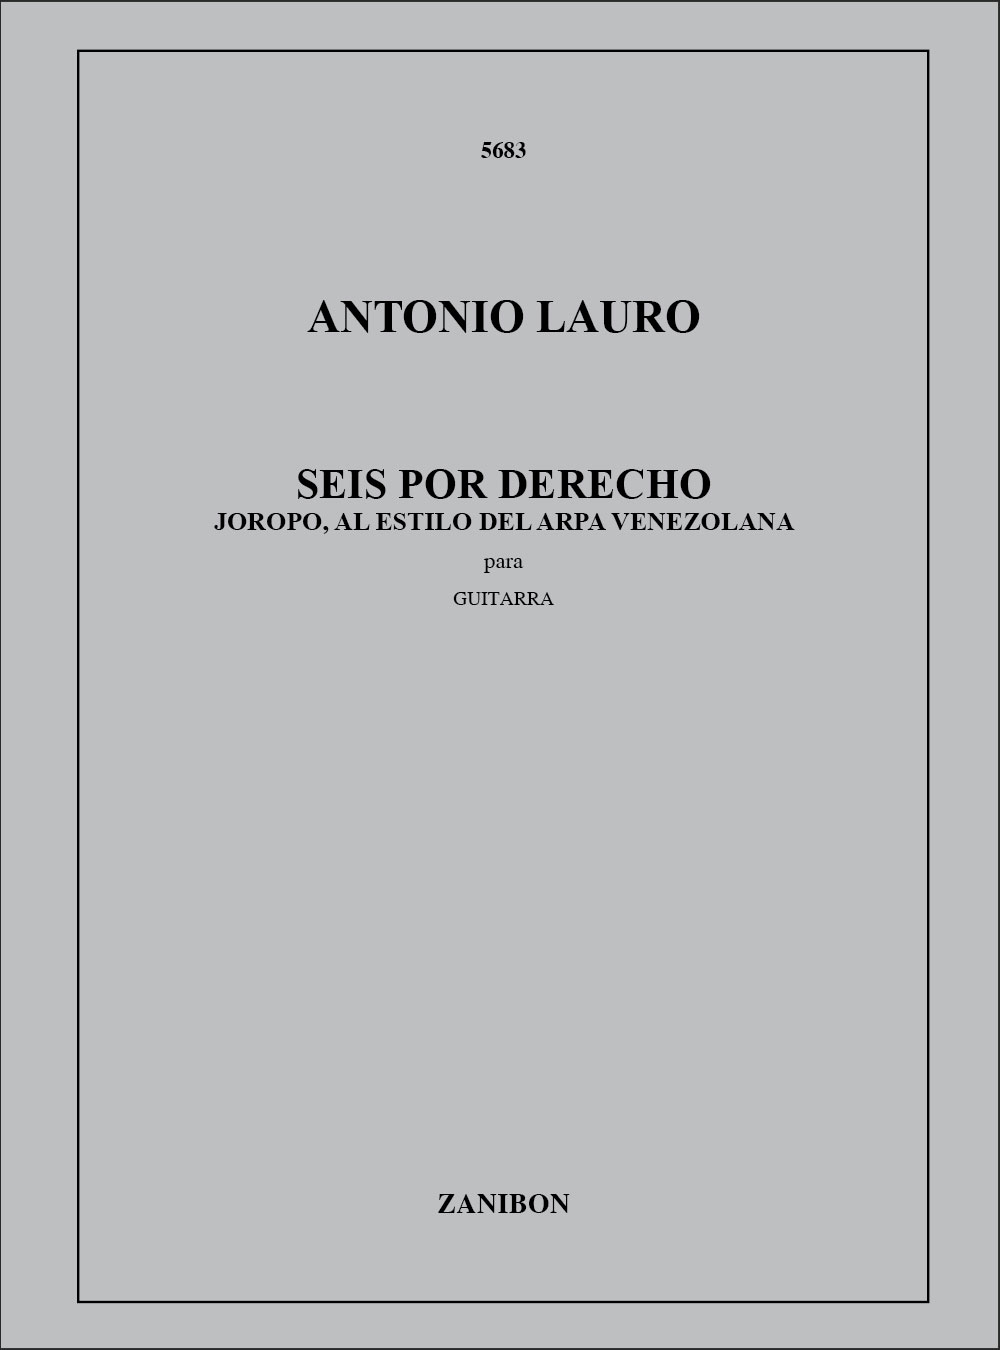 RICORDI LAURO A. - SEIS POR DERECHO - GUITARE